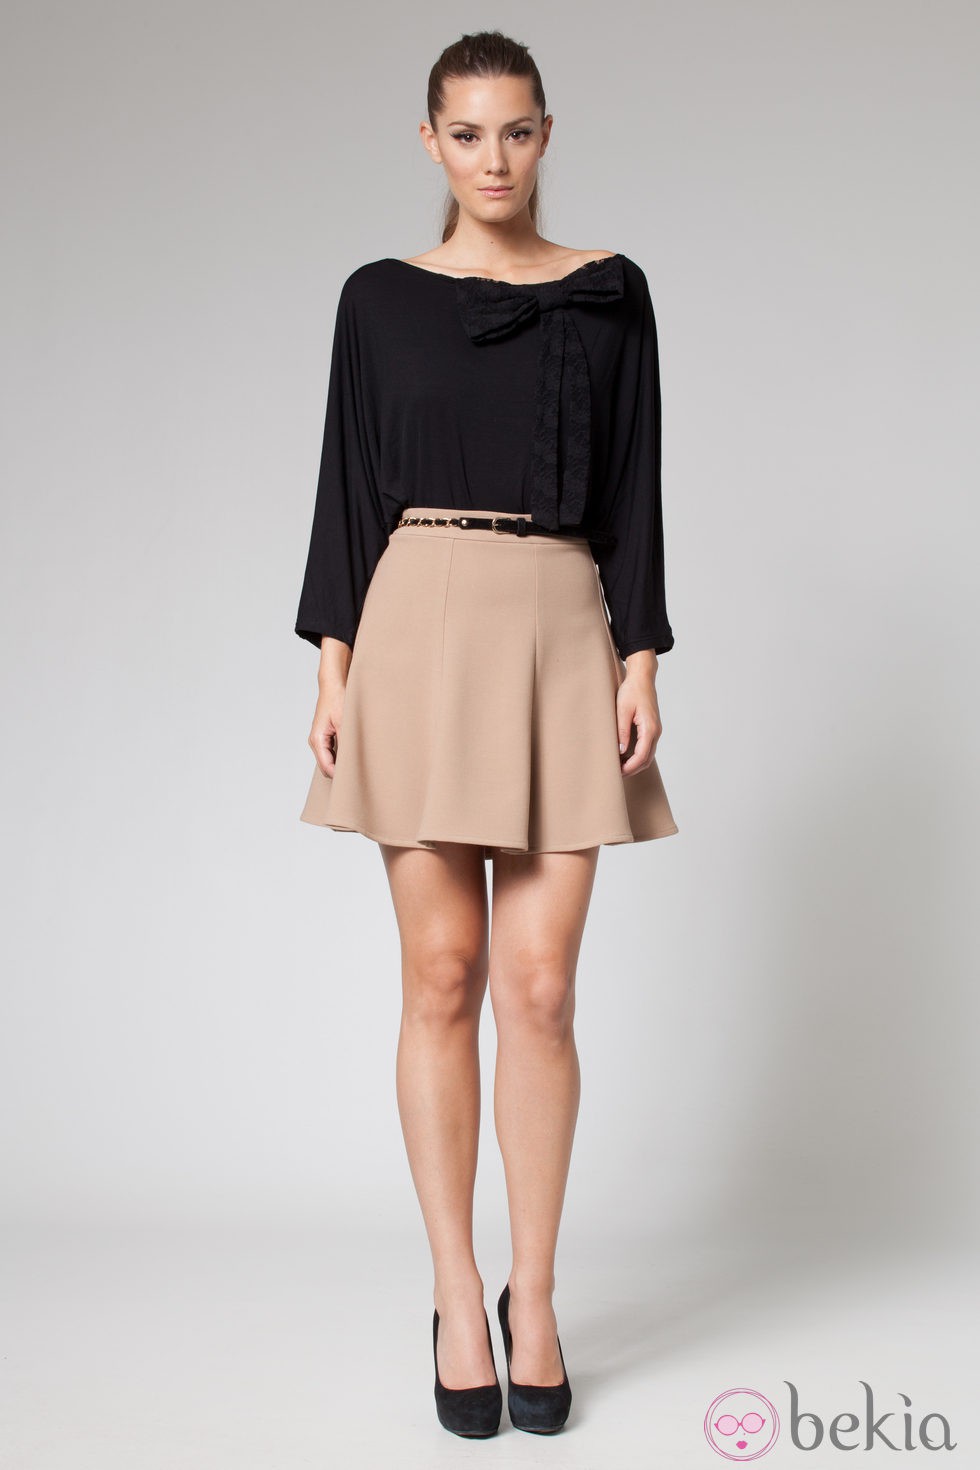 Look de falda y camiseta de la colección otoño/invierno 2013 de Poète